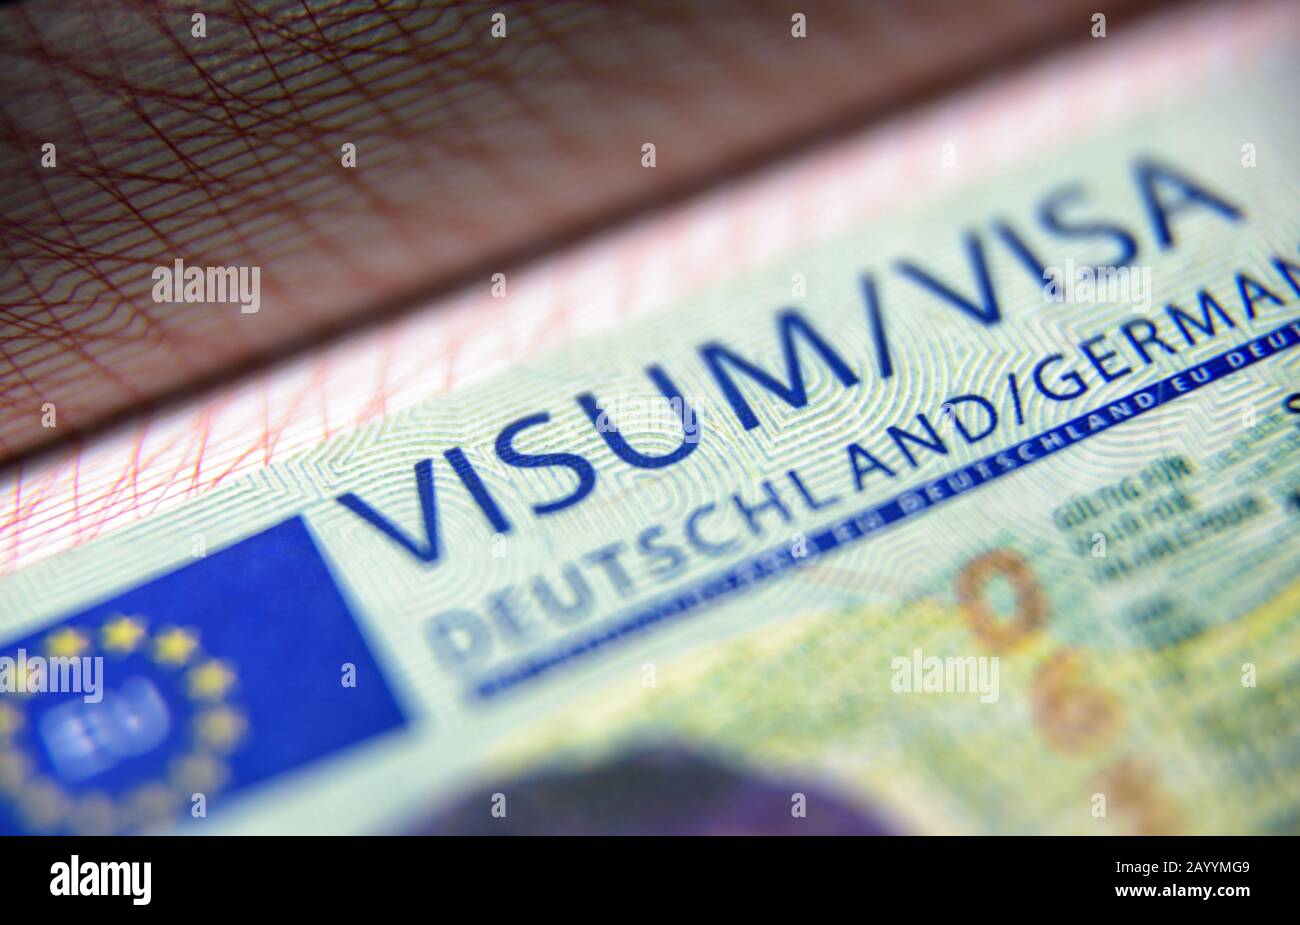 Visto in primo piano sul passaporto. Visto tedesco per i visitatori al controllo delle frontiere. Vista macro del visto Schengen per il turismo e i viaggi nell'UE. Documento per multipl Foto Stock